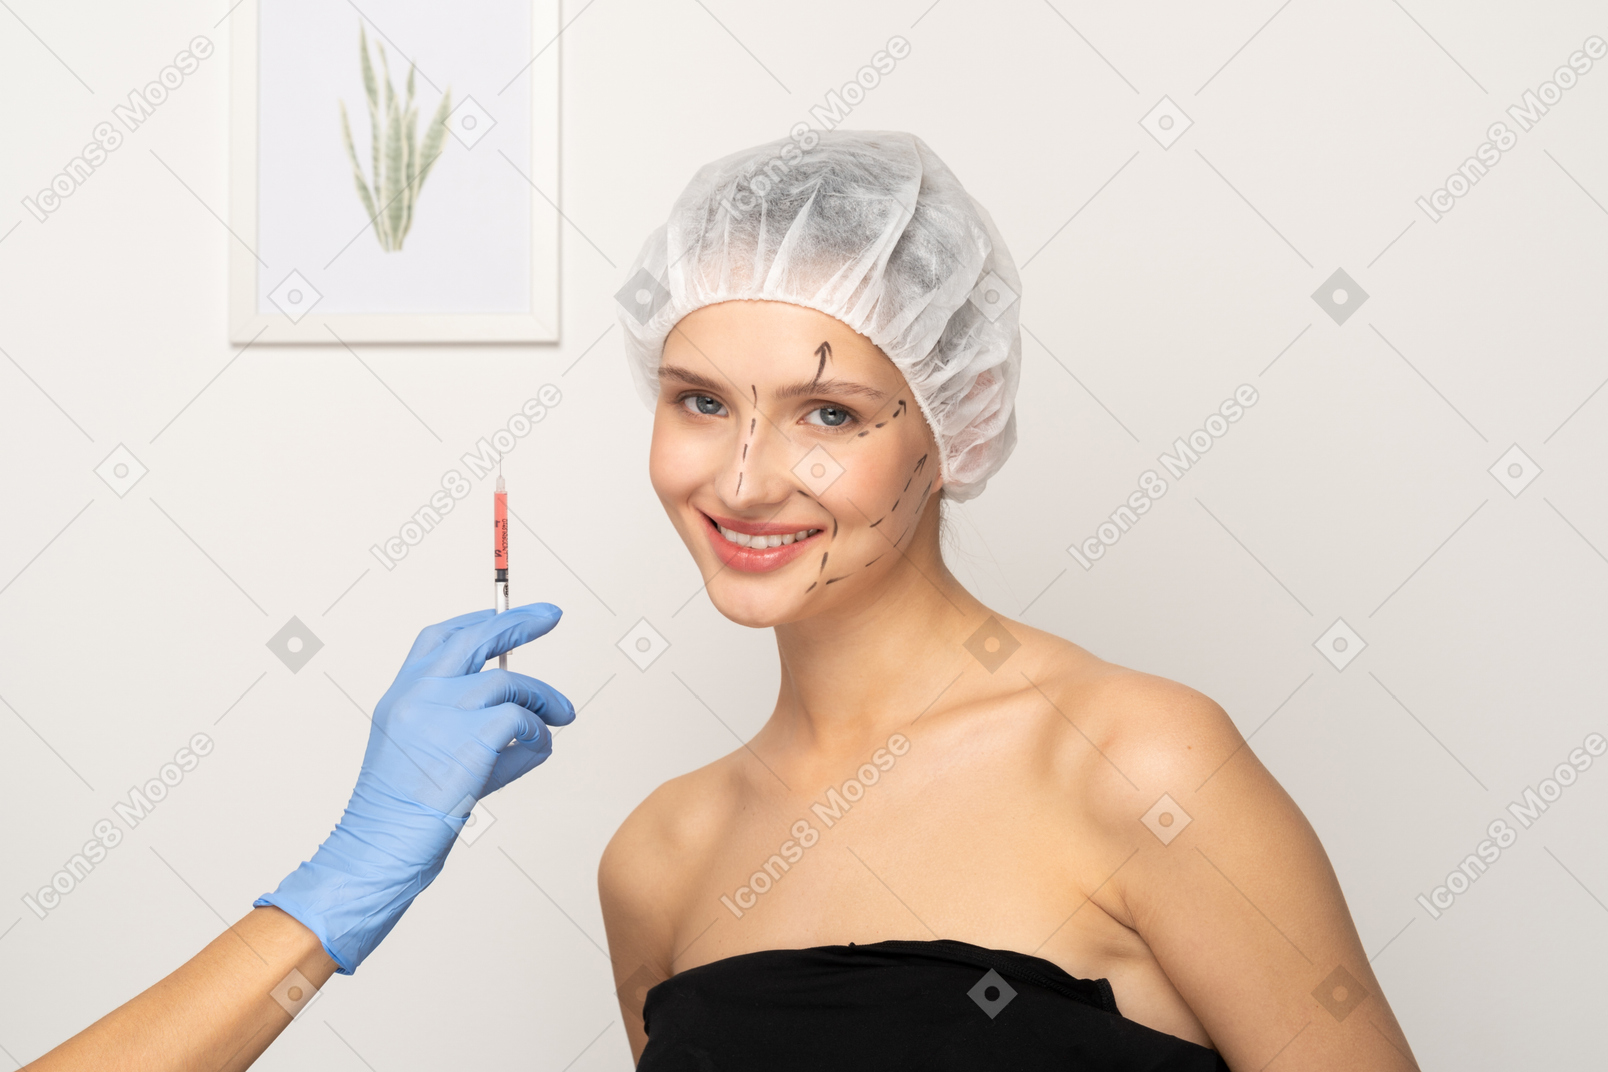 若い女性の笑顔と注射器を保持している手袋をはめた手